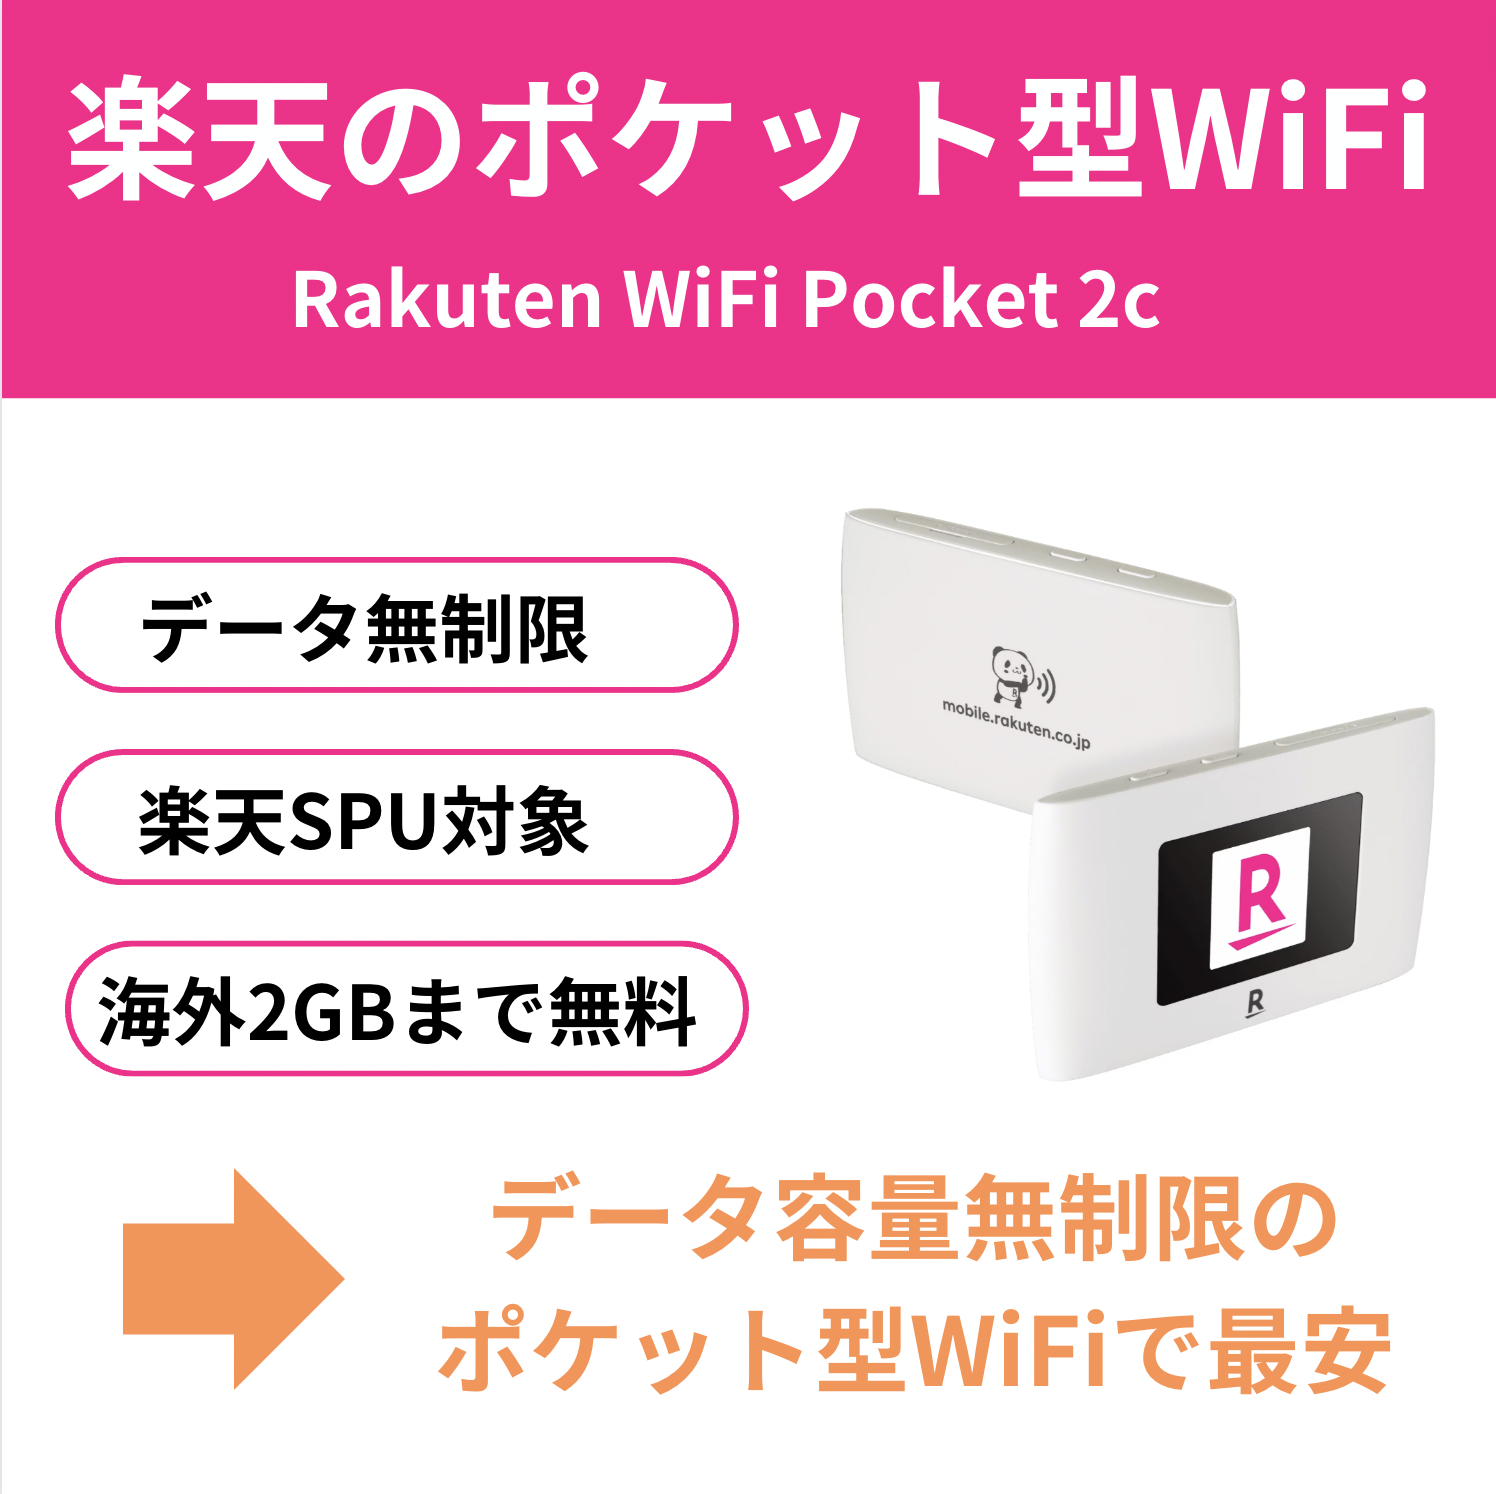 楽天モバイルのポケット型WiFi「Rakuten WiFi Pocket」は実質1円で利用